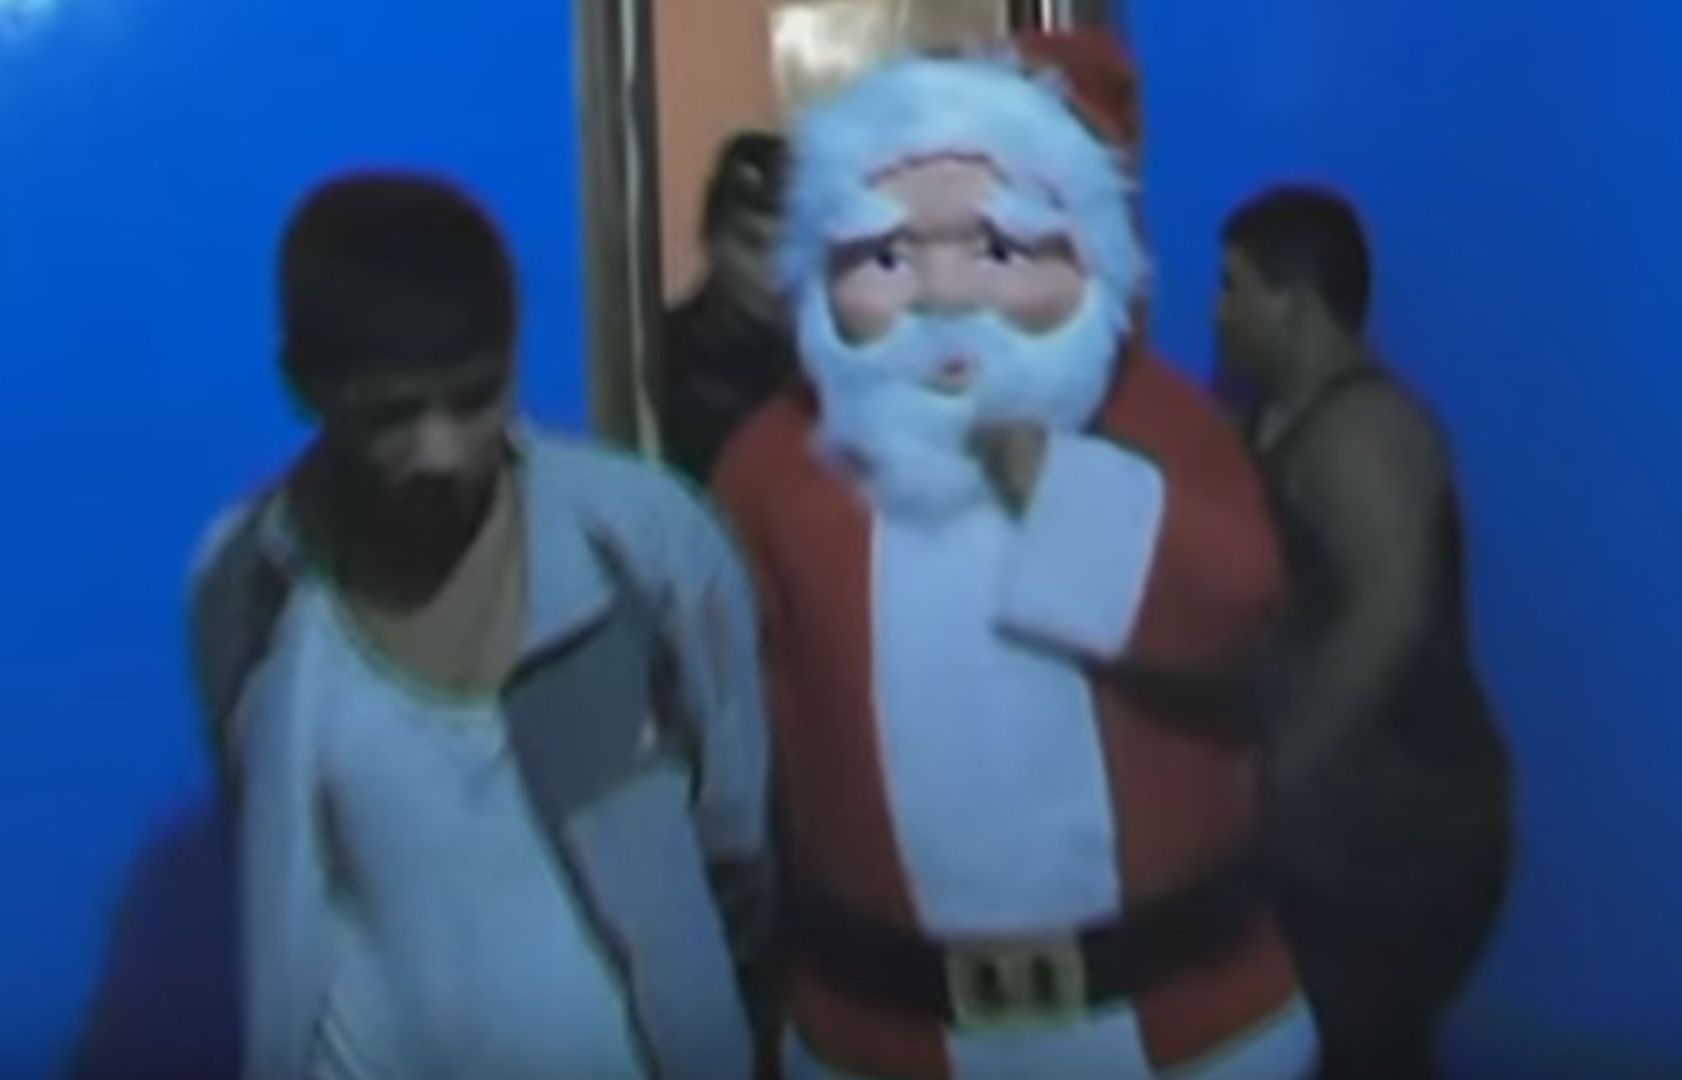 Święty Mikołaj przybył wcześniej i... odwiedził dilerów narkotyków